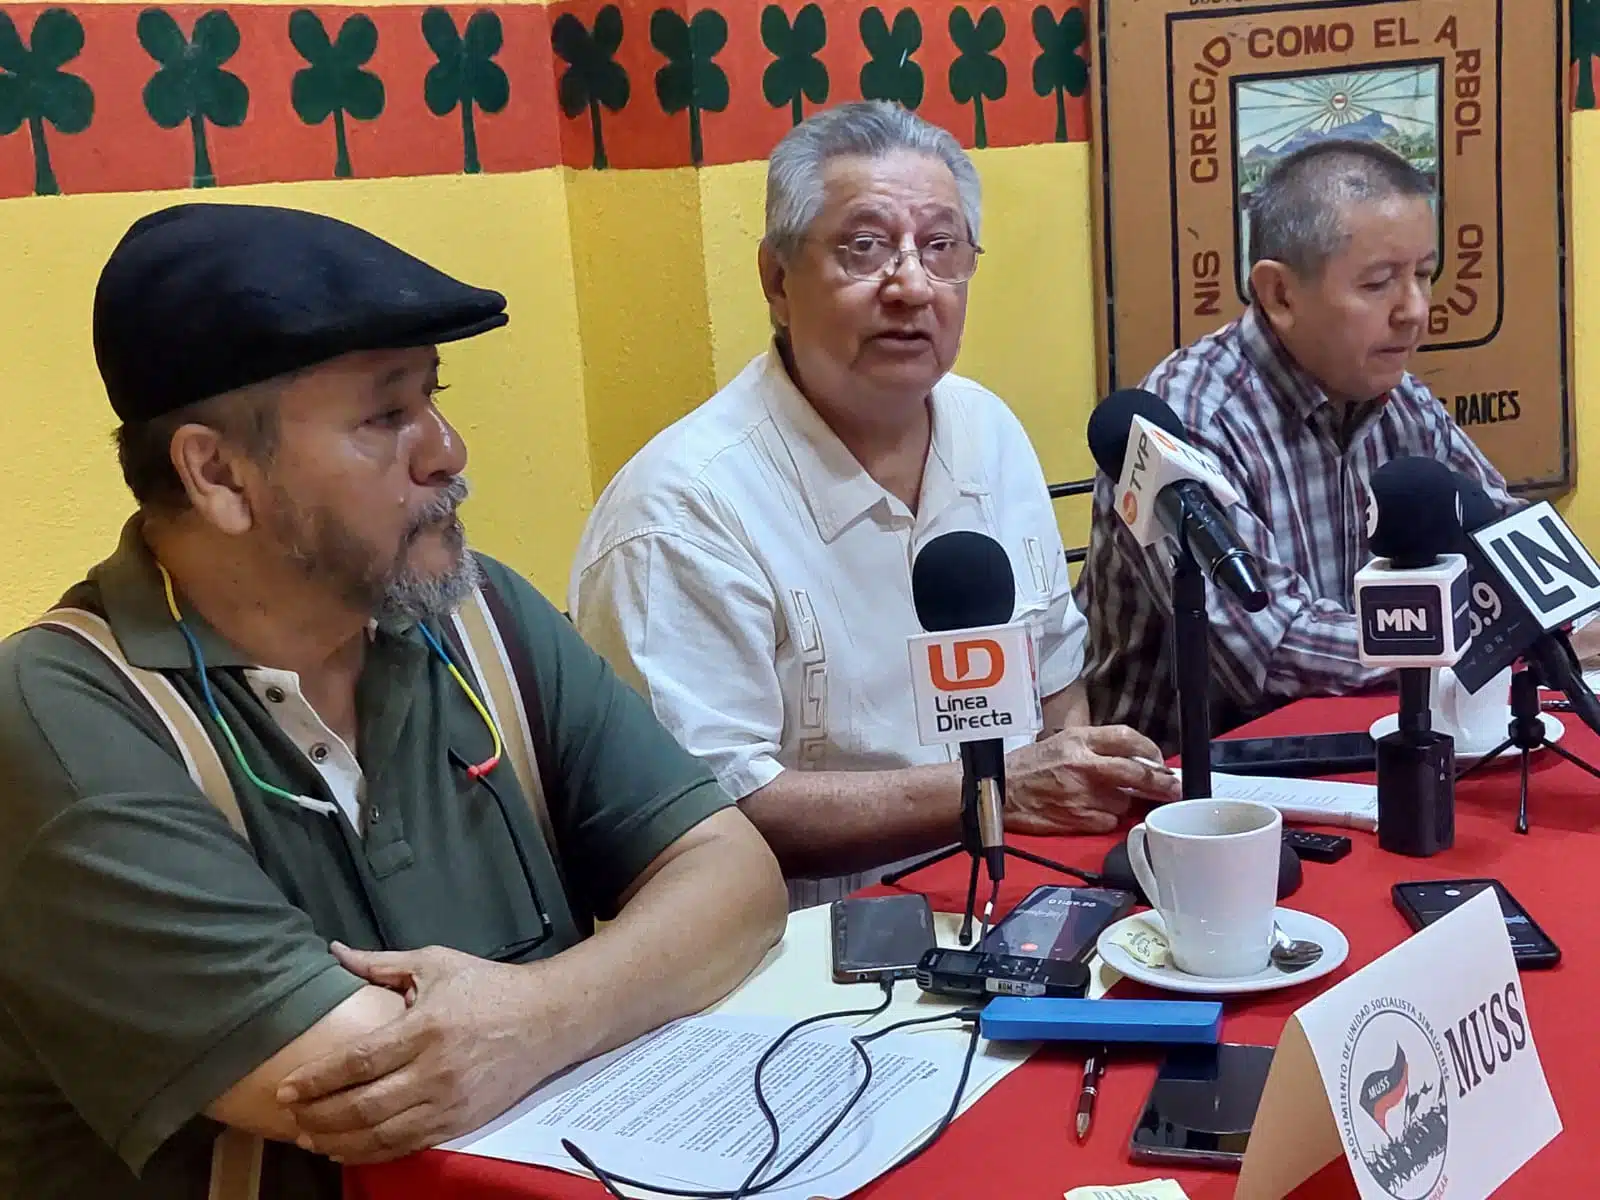 MUSS presenta avance de diagnóstico a rezagos en Sinaloa